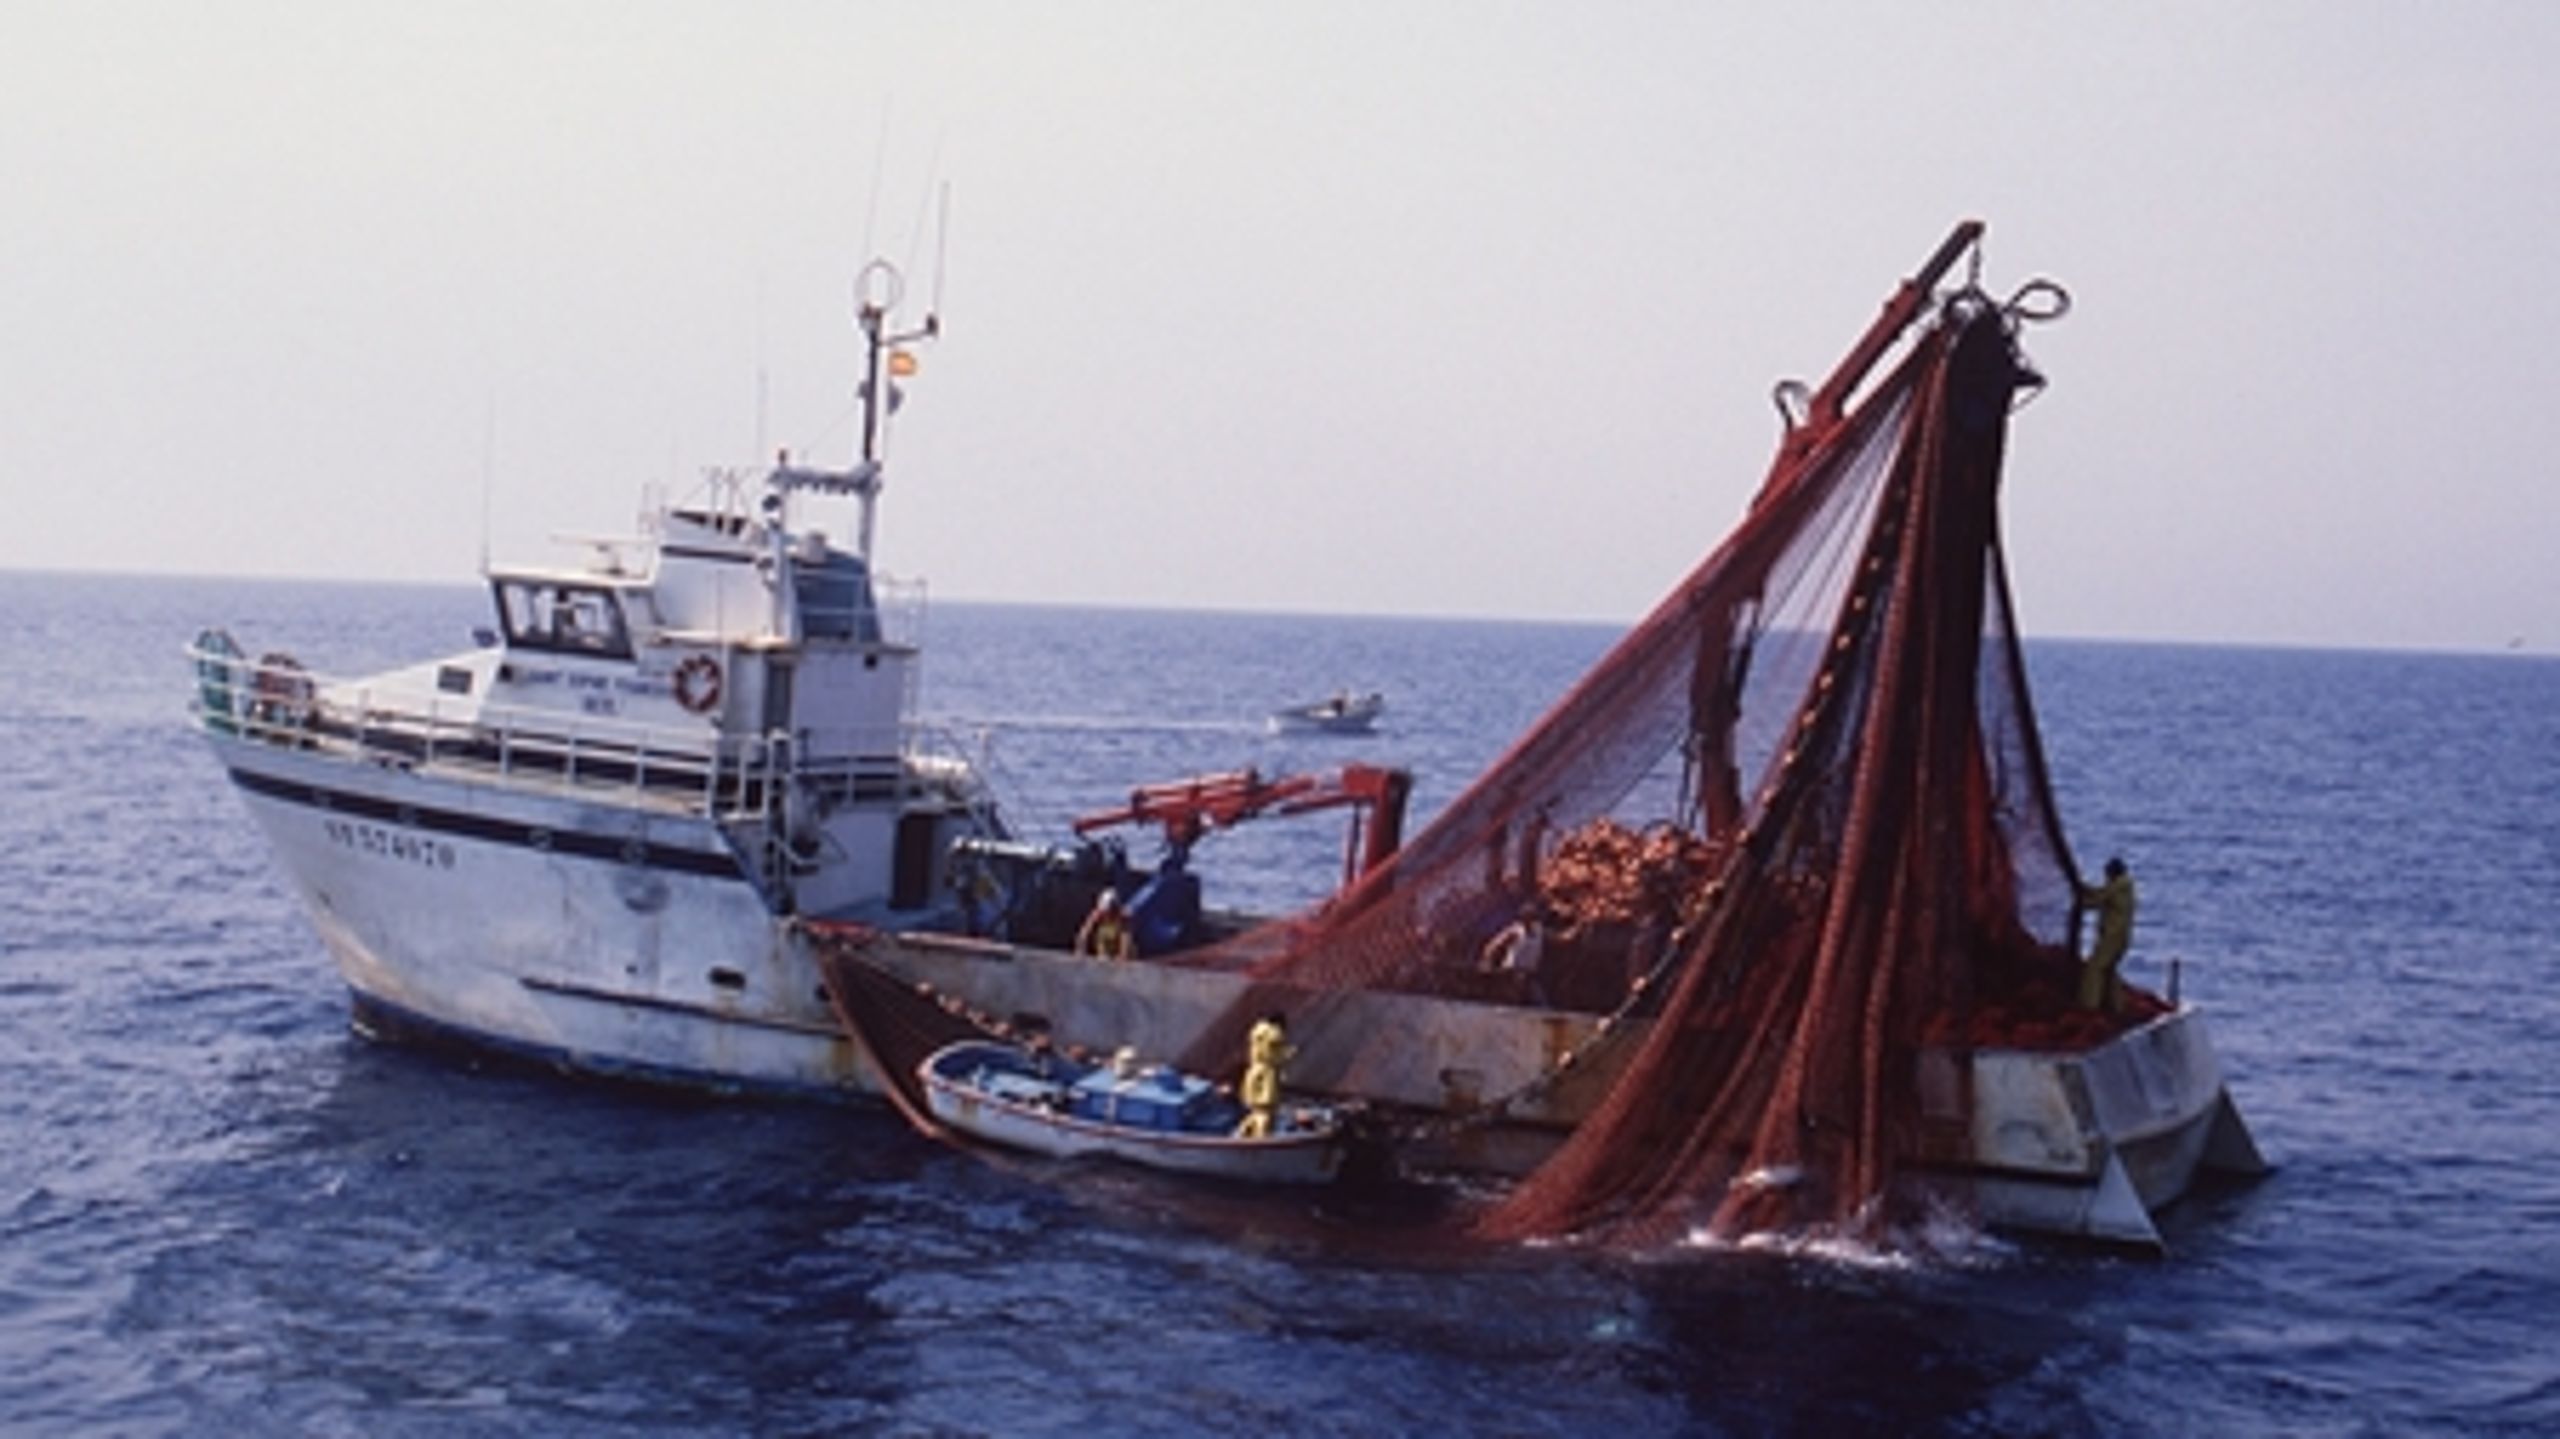 Det er for dårligt, at der fortsat gives lov til trawlfiskeri i natura 2000-områderne, mener WWF.